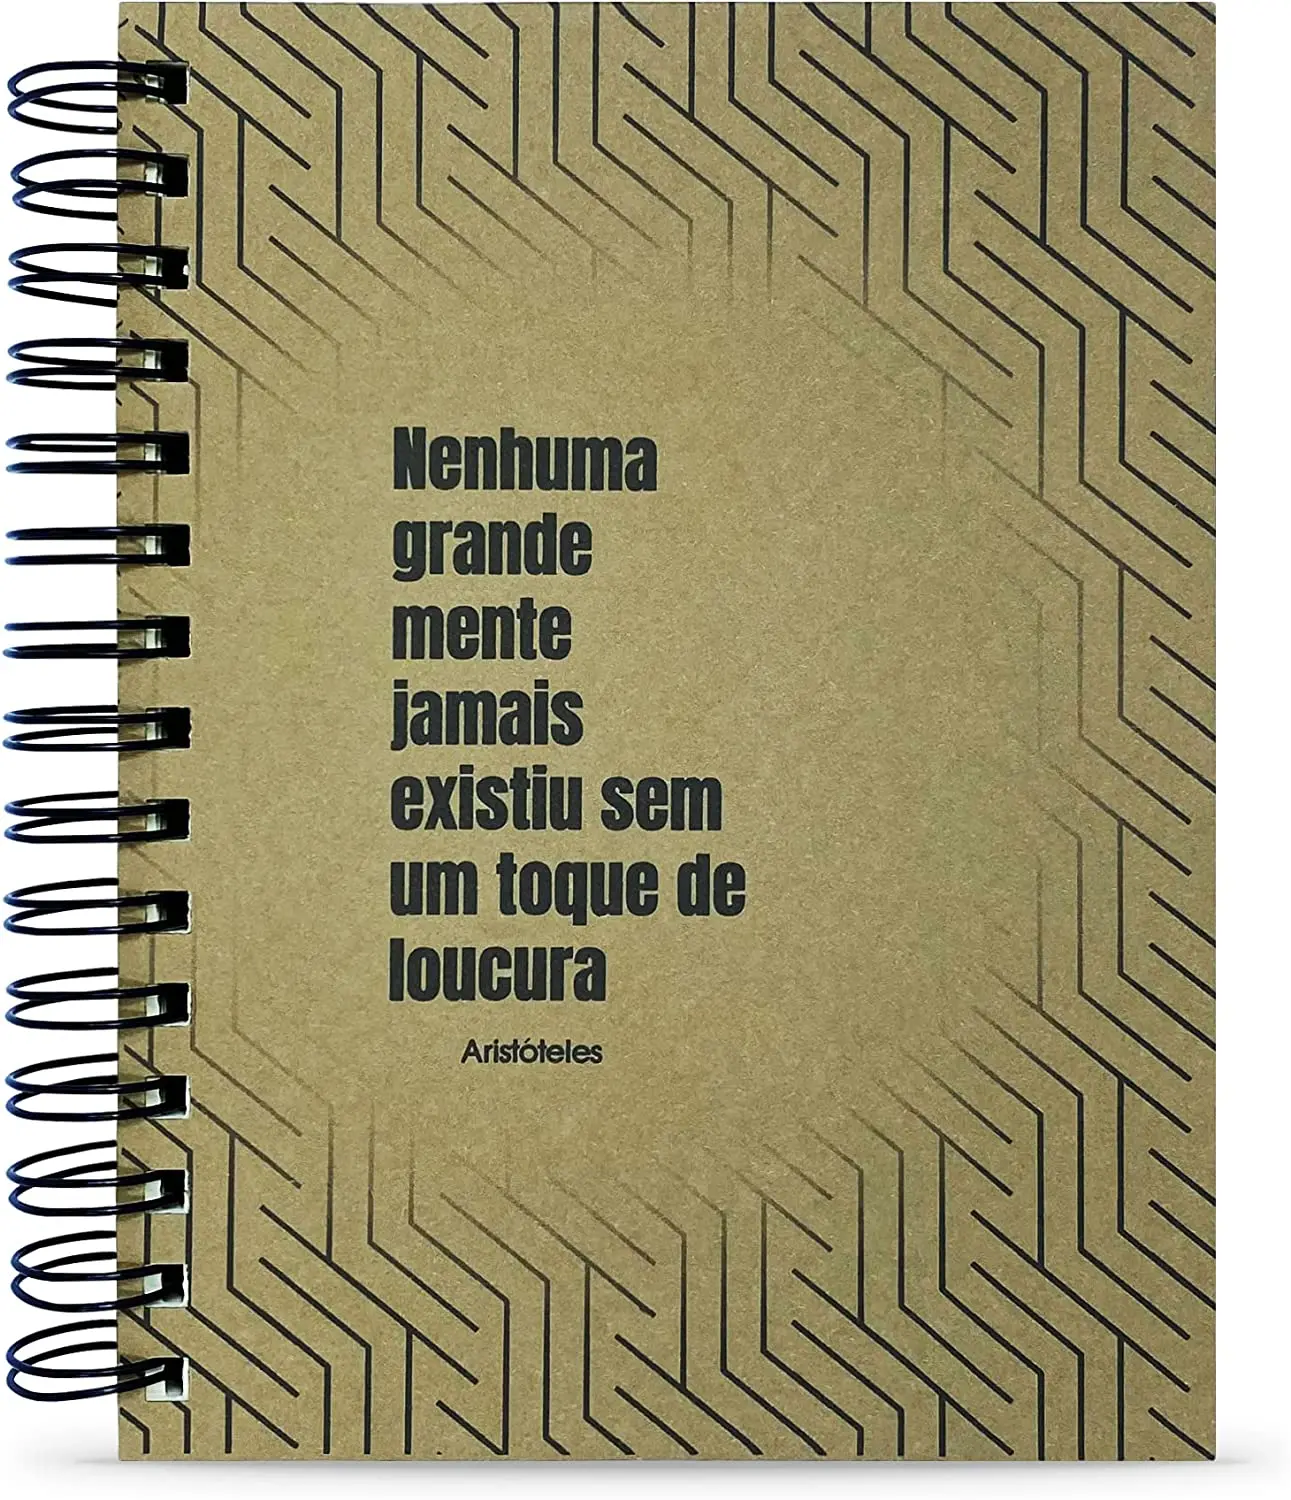 

Caderno Aristóteles "Nenhuma Grande Mente" 125 Fls. Capa Dura Tamanho 15x21cm notebooks com frete grátis